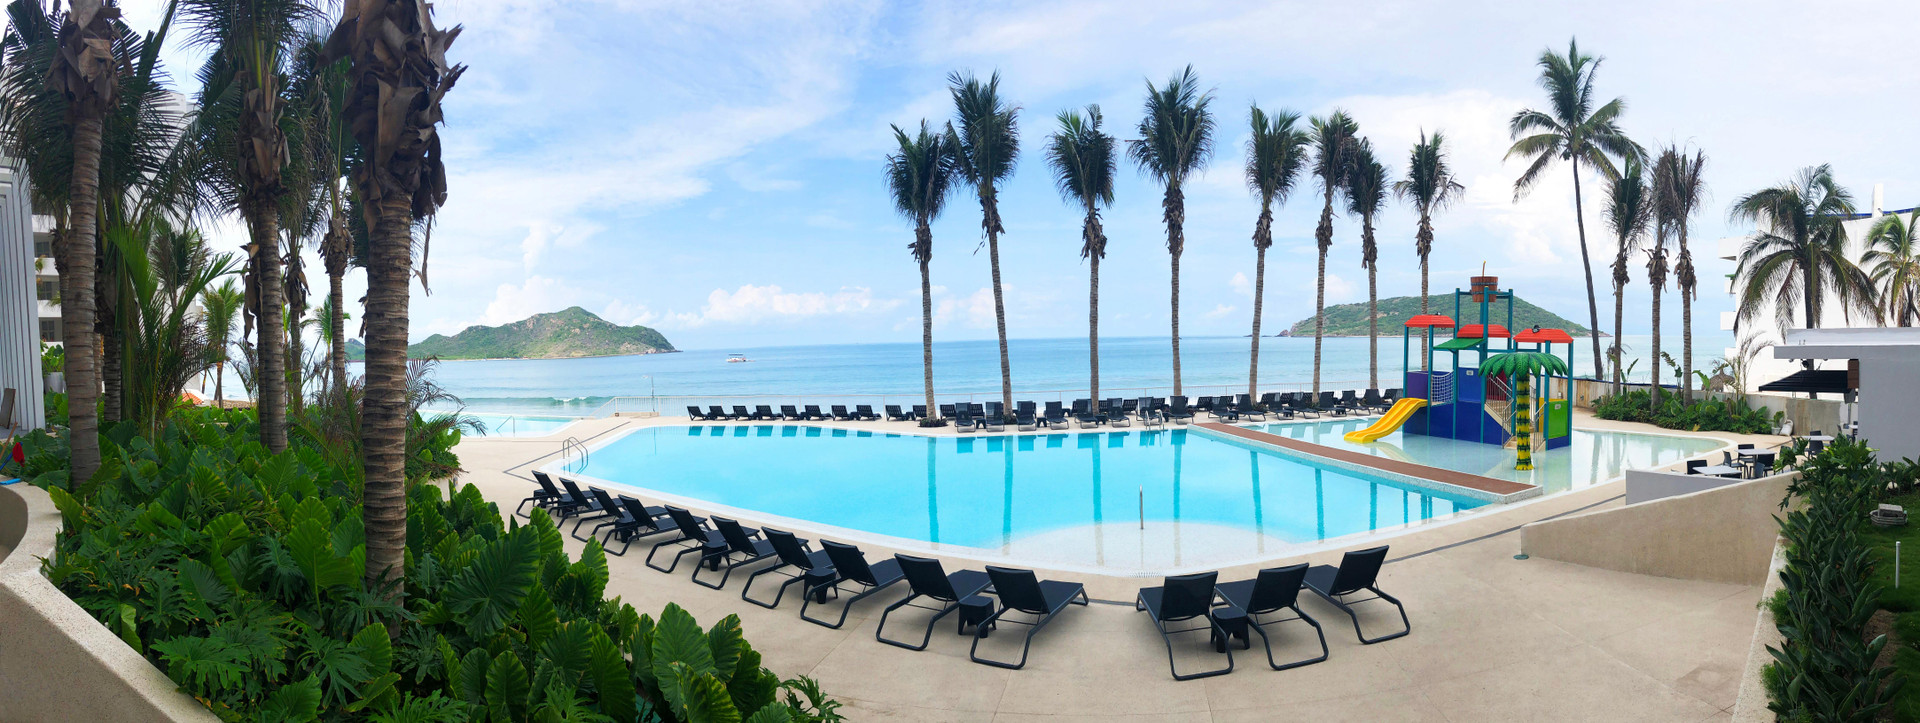 Pool view Viaggio Resort Mazatlán